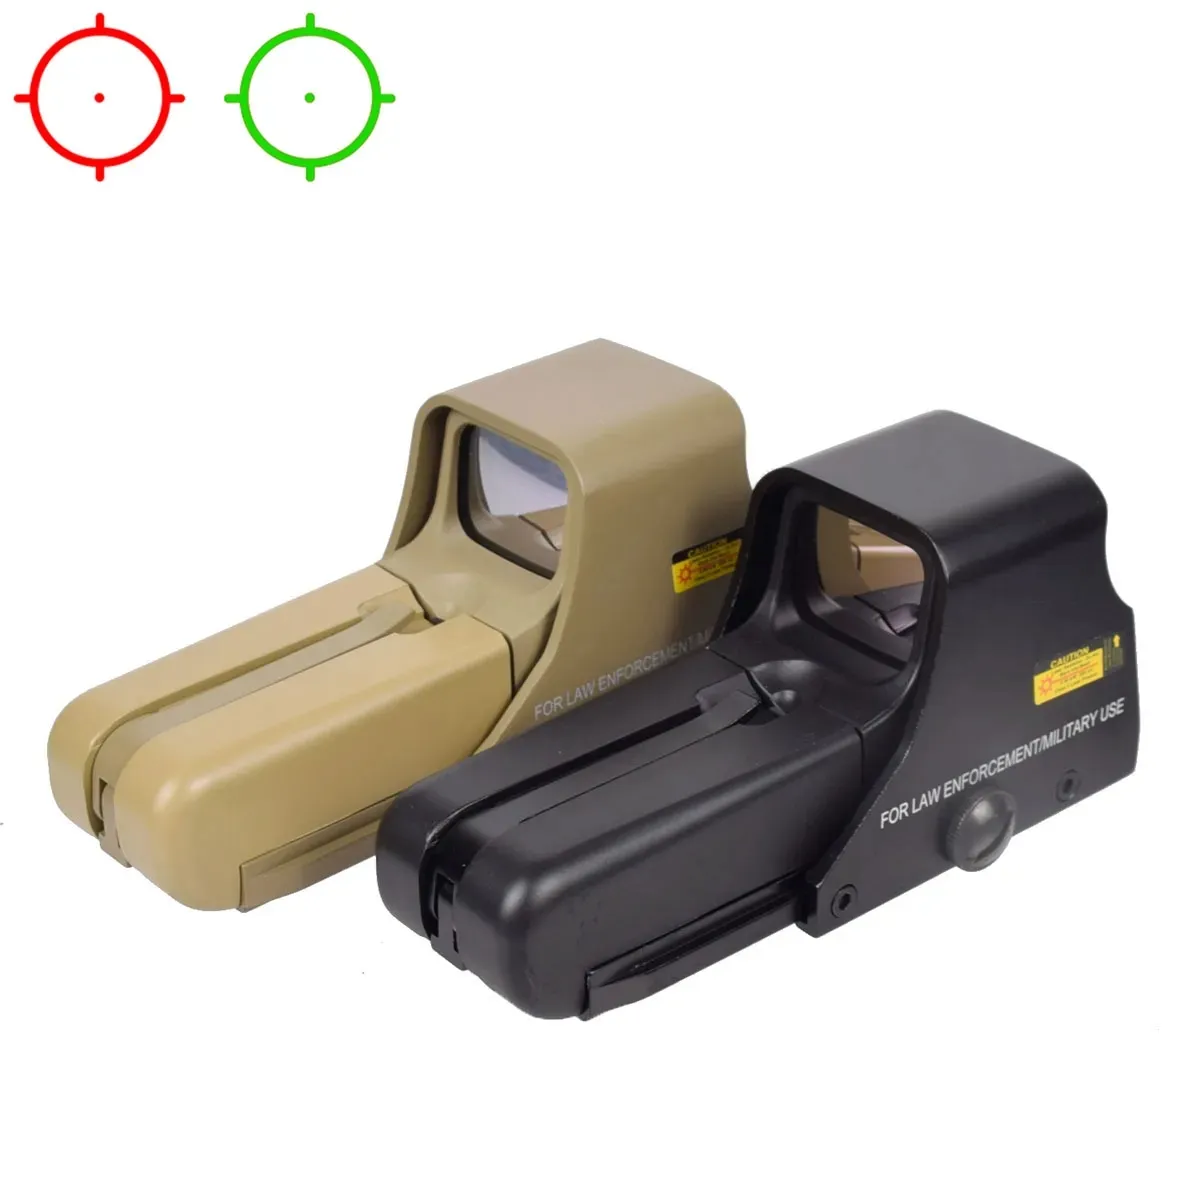 551 552 553 Holograficzny zielony czerwony widok kropki Optics Nocne wizja karabin karabinu 20 mm do mocowania szyny dla HK416 AR15-Black